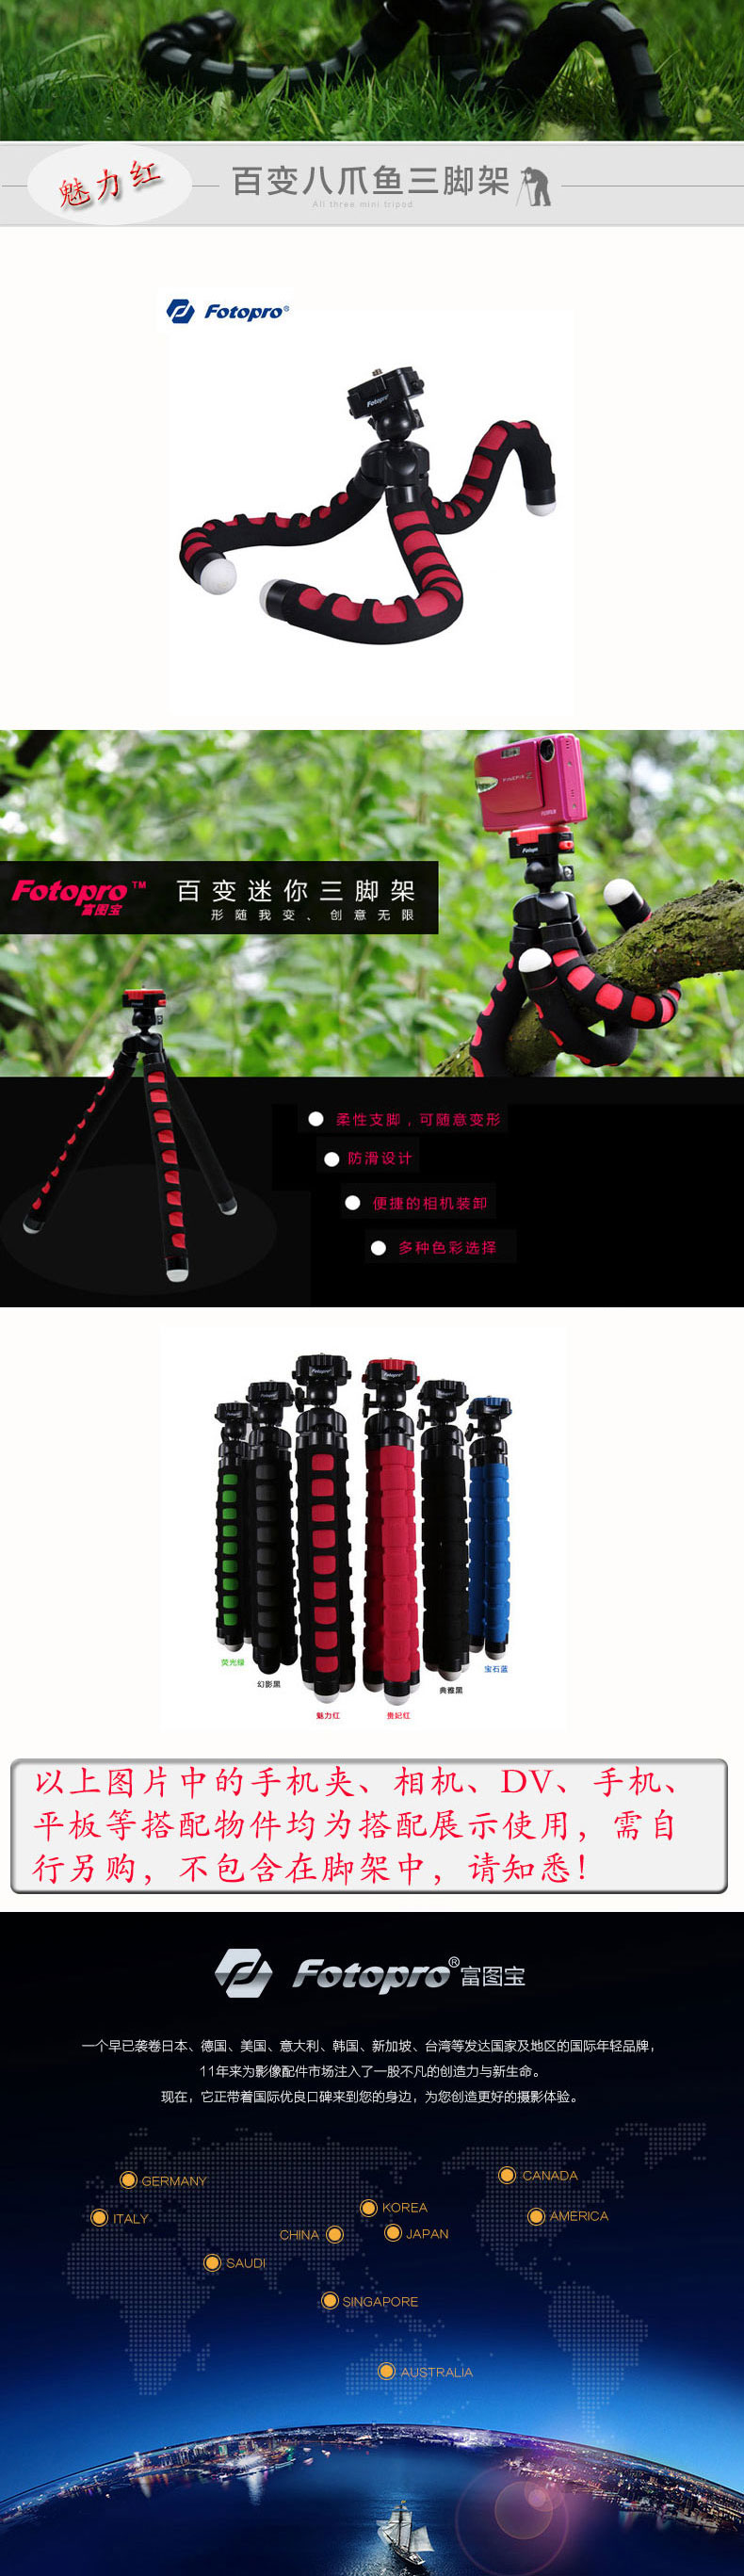 富图宝(Fotopro) RM-100 魅力红 便携八爪鱼懒人相机手机支架创意三脚架手机支架